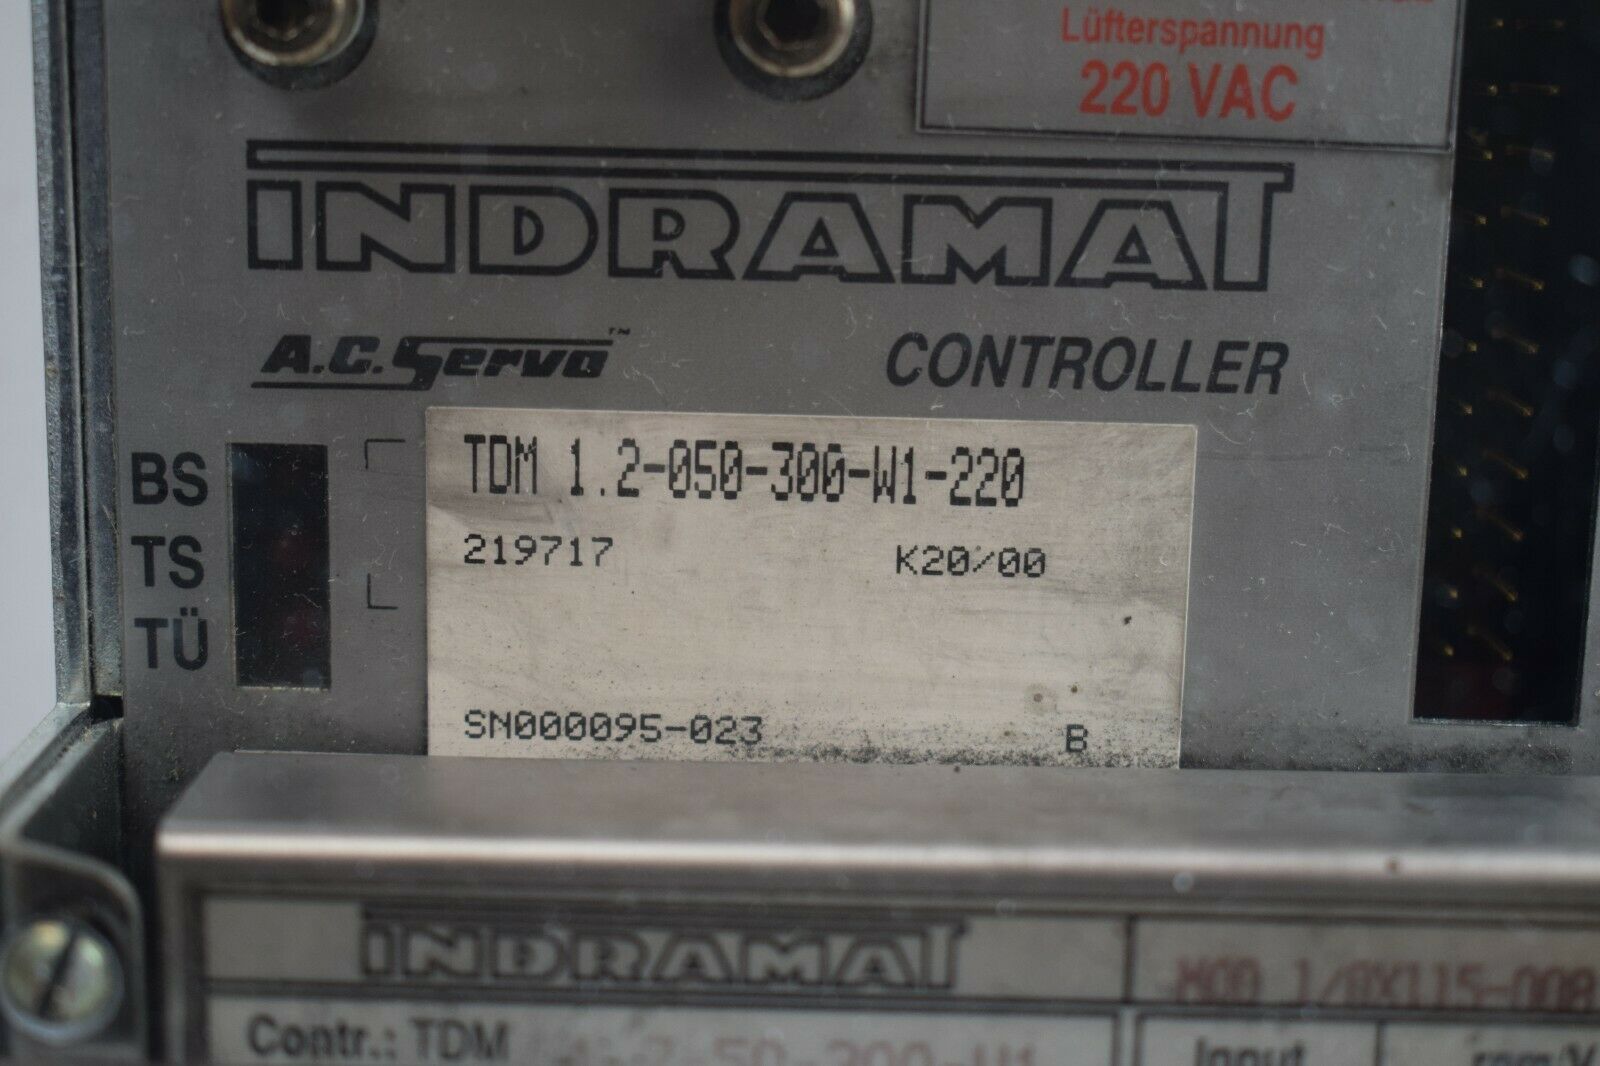 Indramat A.C. Servo Controller TDM 1.2-050-300-W1-220 + MOD1/0X035-008